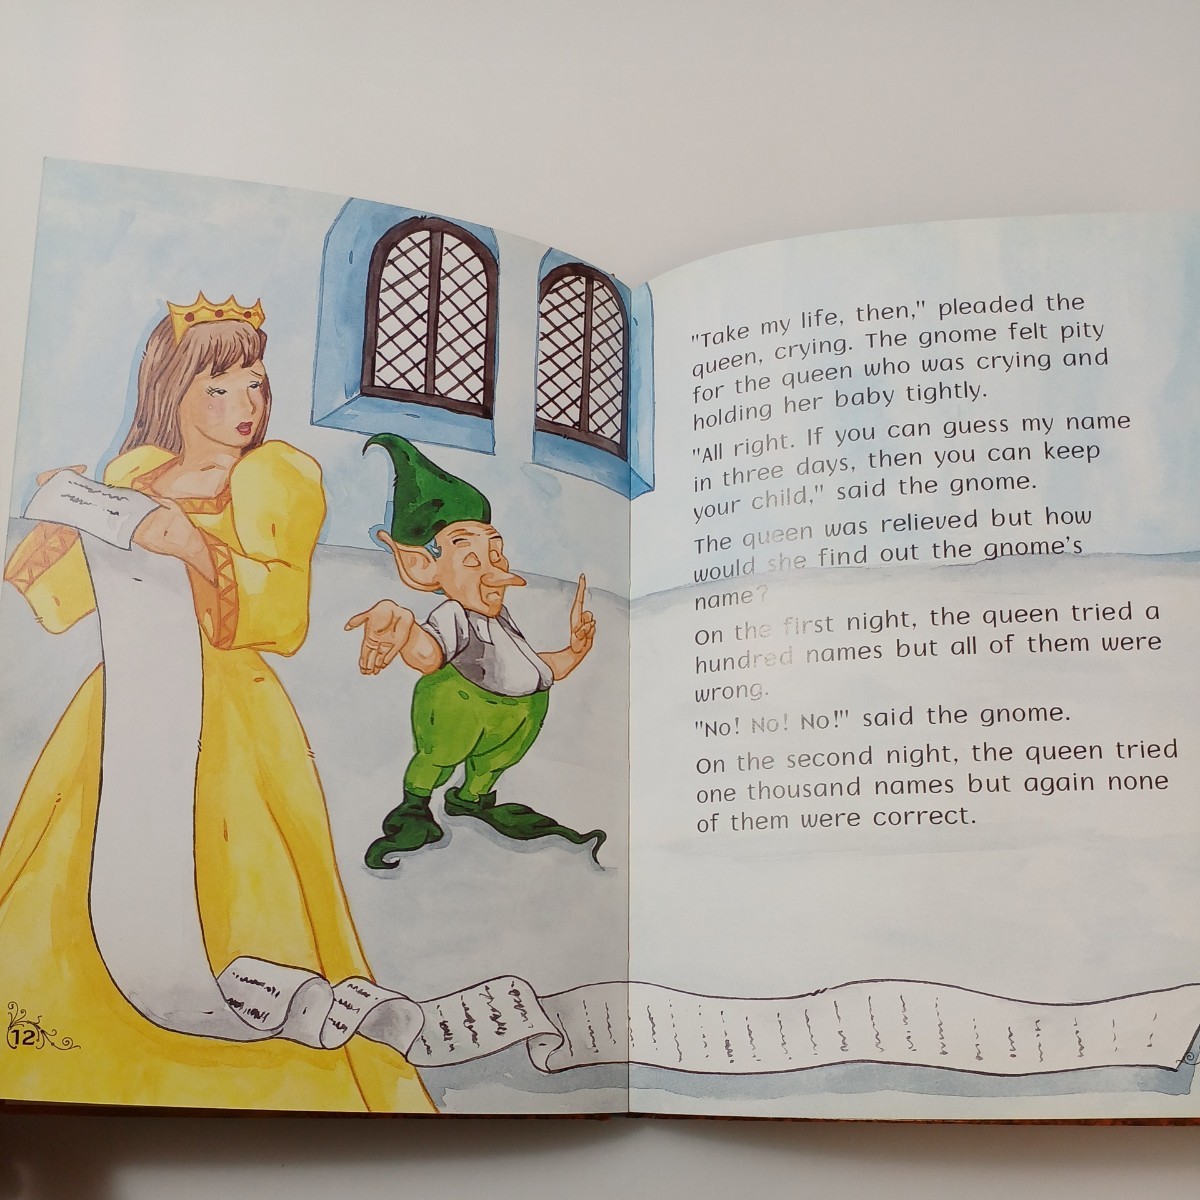 zaa-517♪classic fairy tales RUMPELSTILTSKIN RAPUNZEL Stary2 Retold by jeff K.L.Lay